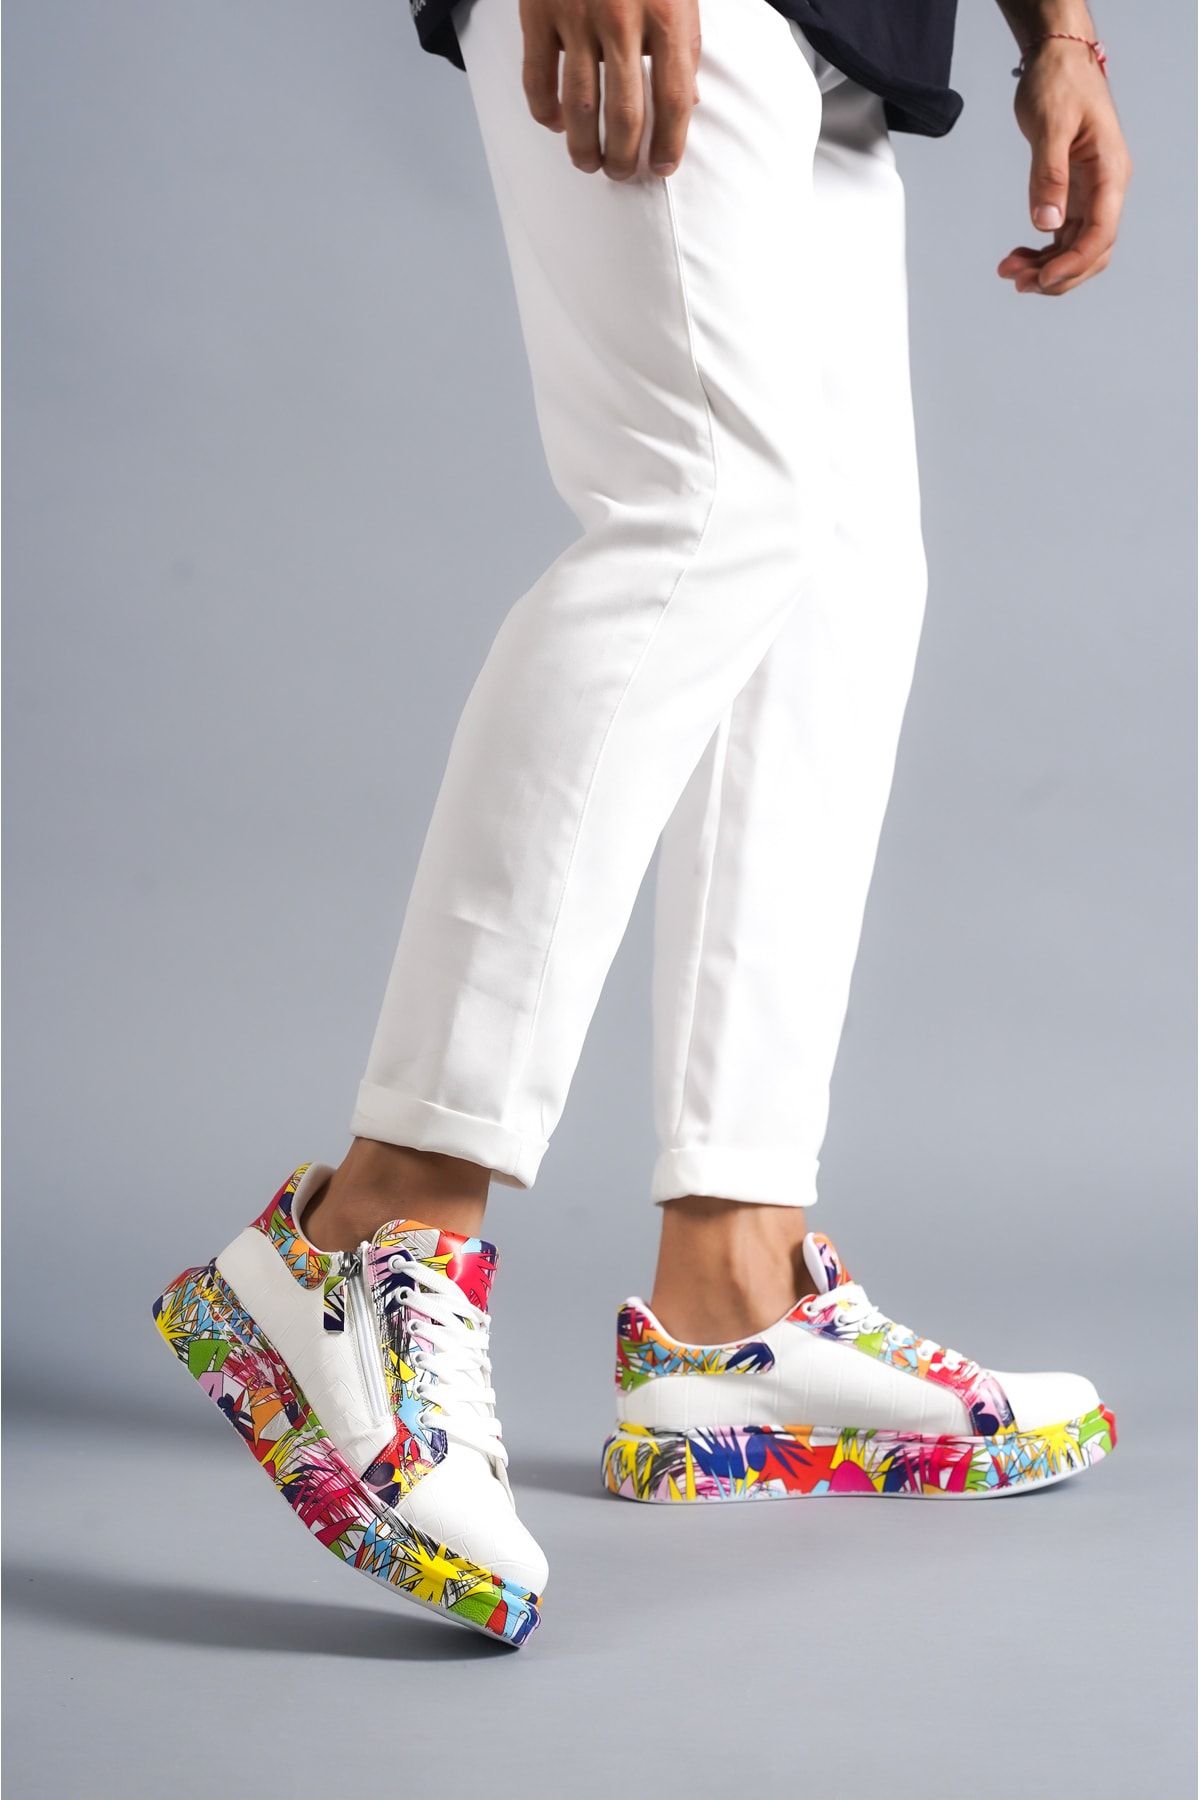 BZ Moda B02 BT Bağcıklı Fermuarlı Timsah Desenli Krmızı Baskılı Ortopedik Taban Erkek Sneaker Ayakkabı Beyaz